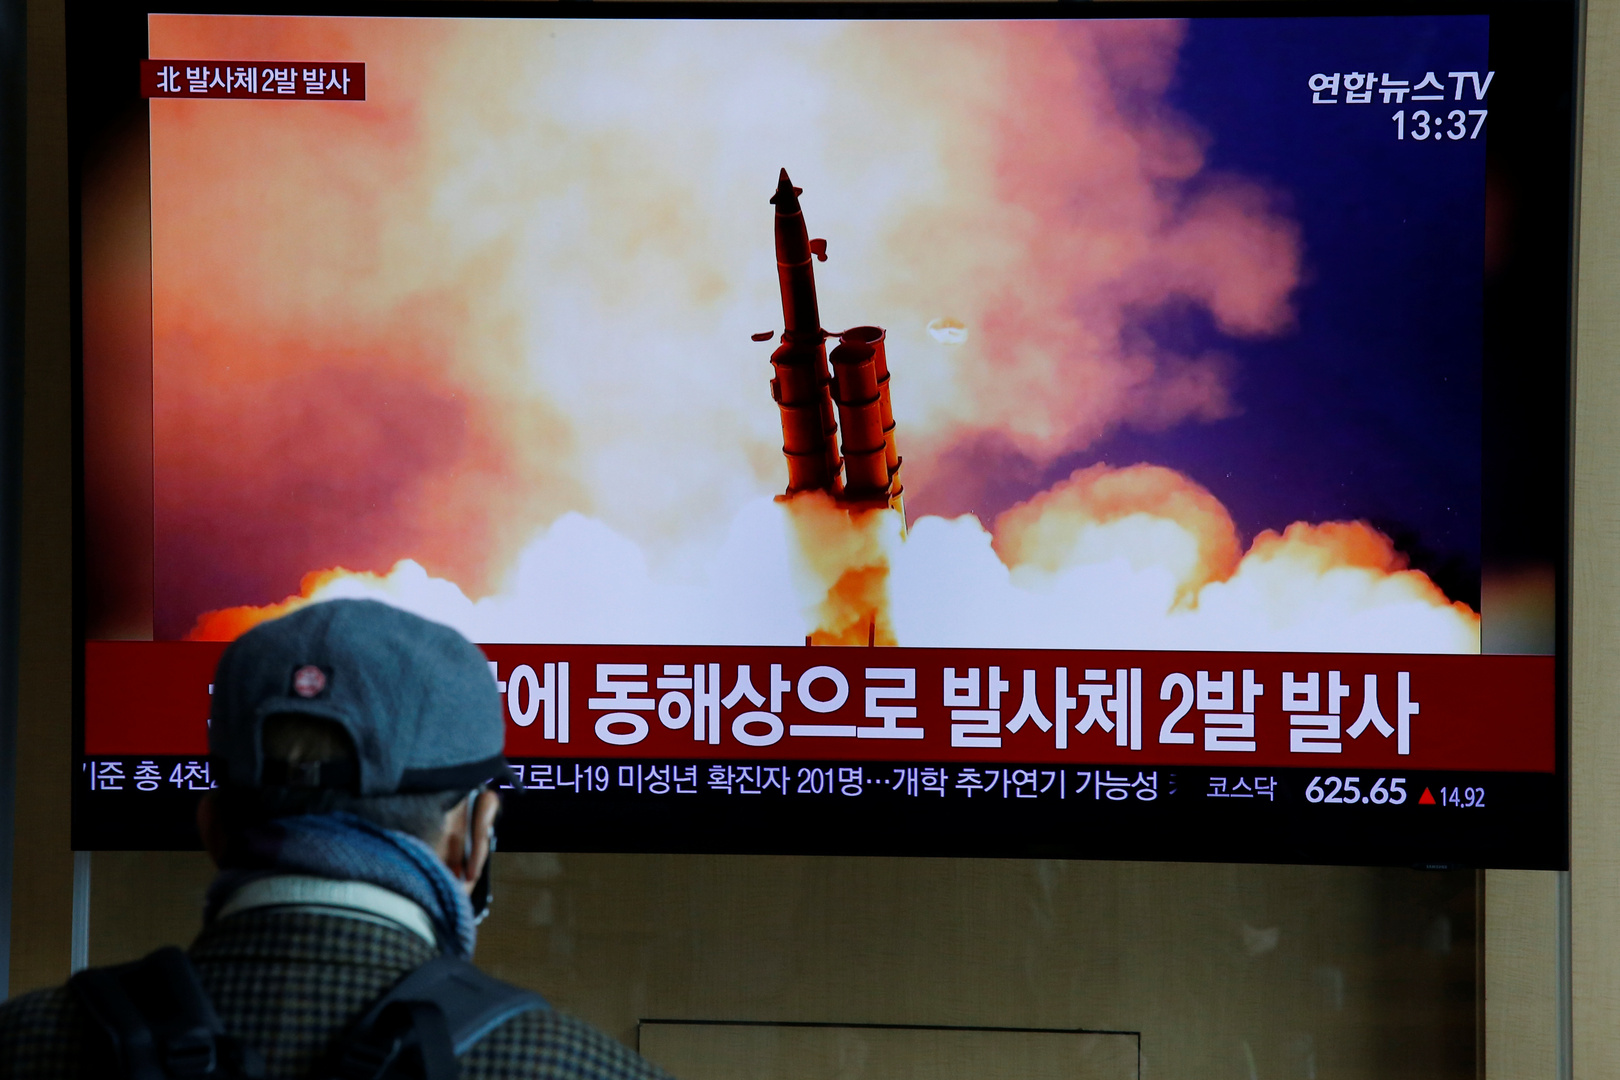 كوريا الشمالية تعتزم تطوير صواريخ بعيدة المدى